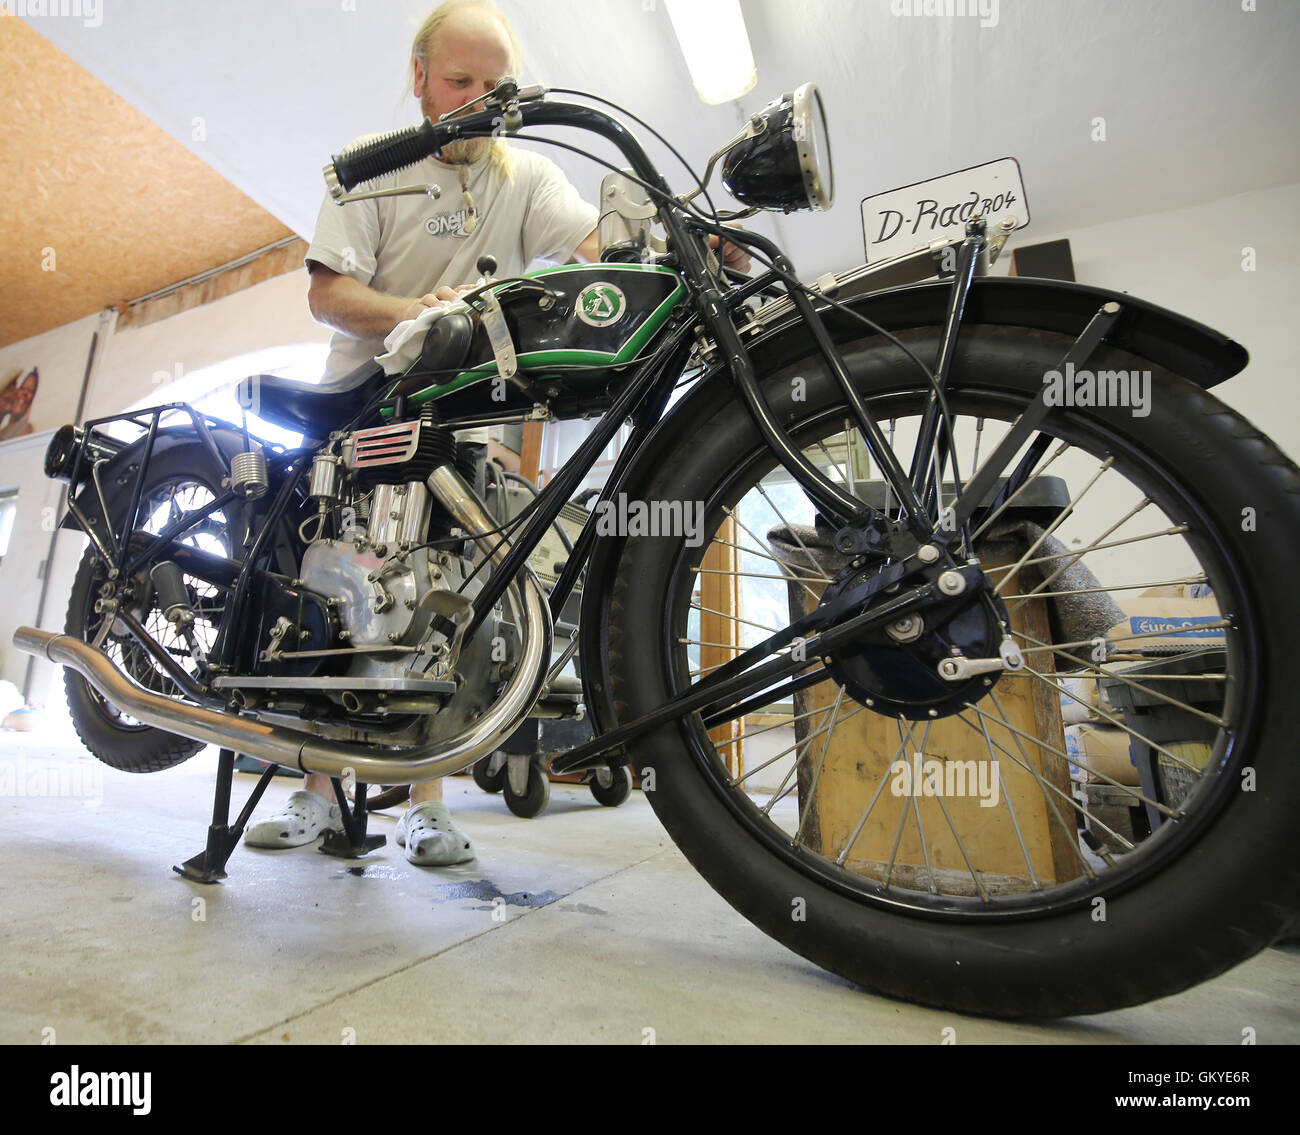 Egsdorf, Allemagne. Août 23, 2016. Michael Seidel présente un D-Rad moto  R04 construit en 1925 dans son atelier de Egsdorf, Allemagne, 23 août 2016.  Seidel a restauré avec soin la Deutsche Kraftfahrzeugwerke